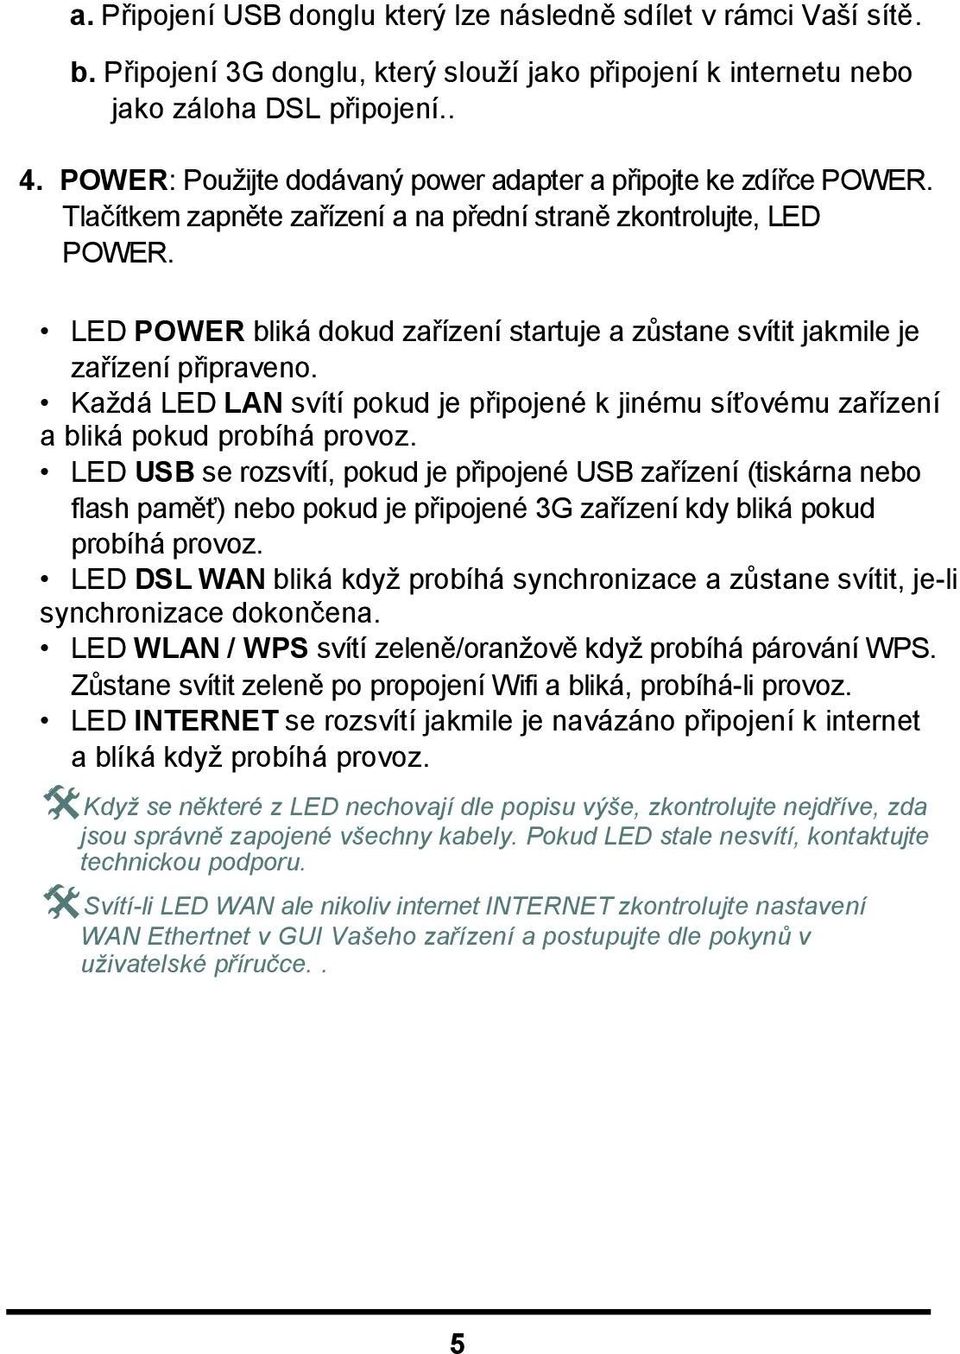 LED POWER bliká dokud zařízení startuje a zůstane svítit jakmile je zařízení připraveno. Každá LED LAN svítí pokud je připojené k jinému síťovému zařízení a bliká pokud probíhá provoz.